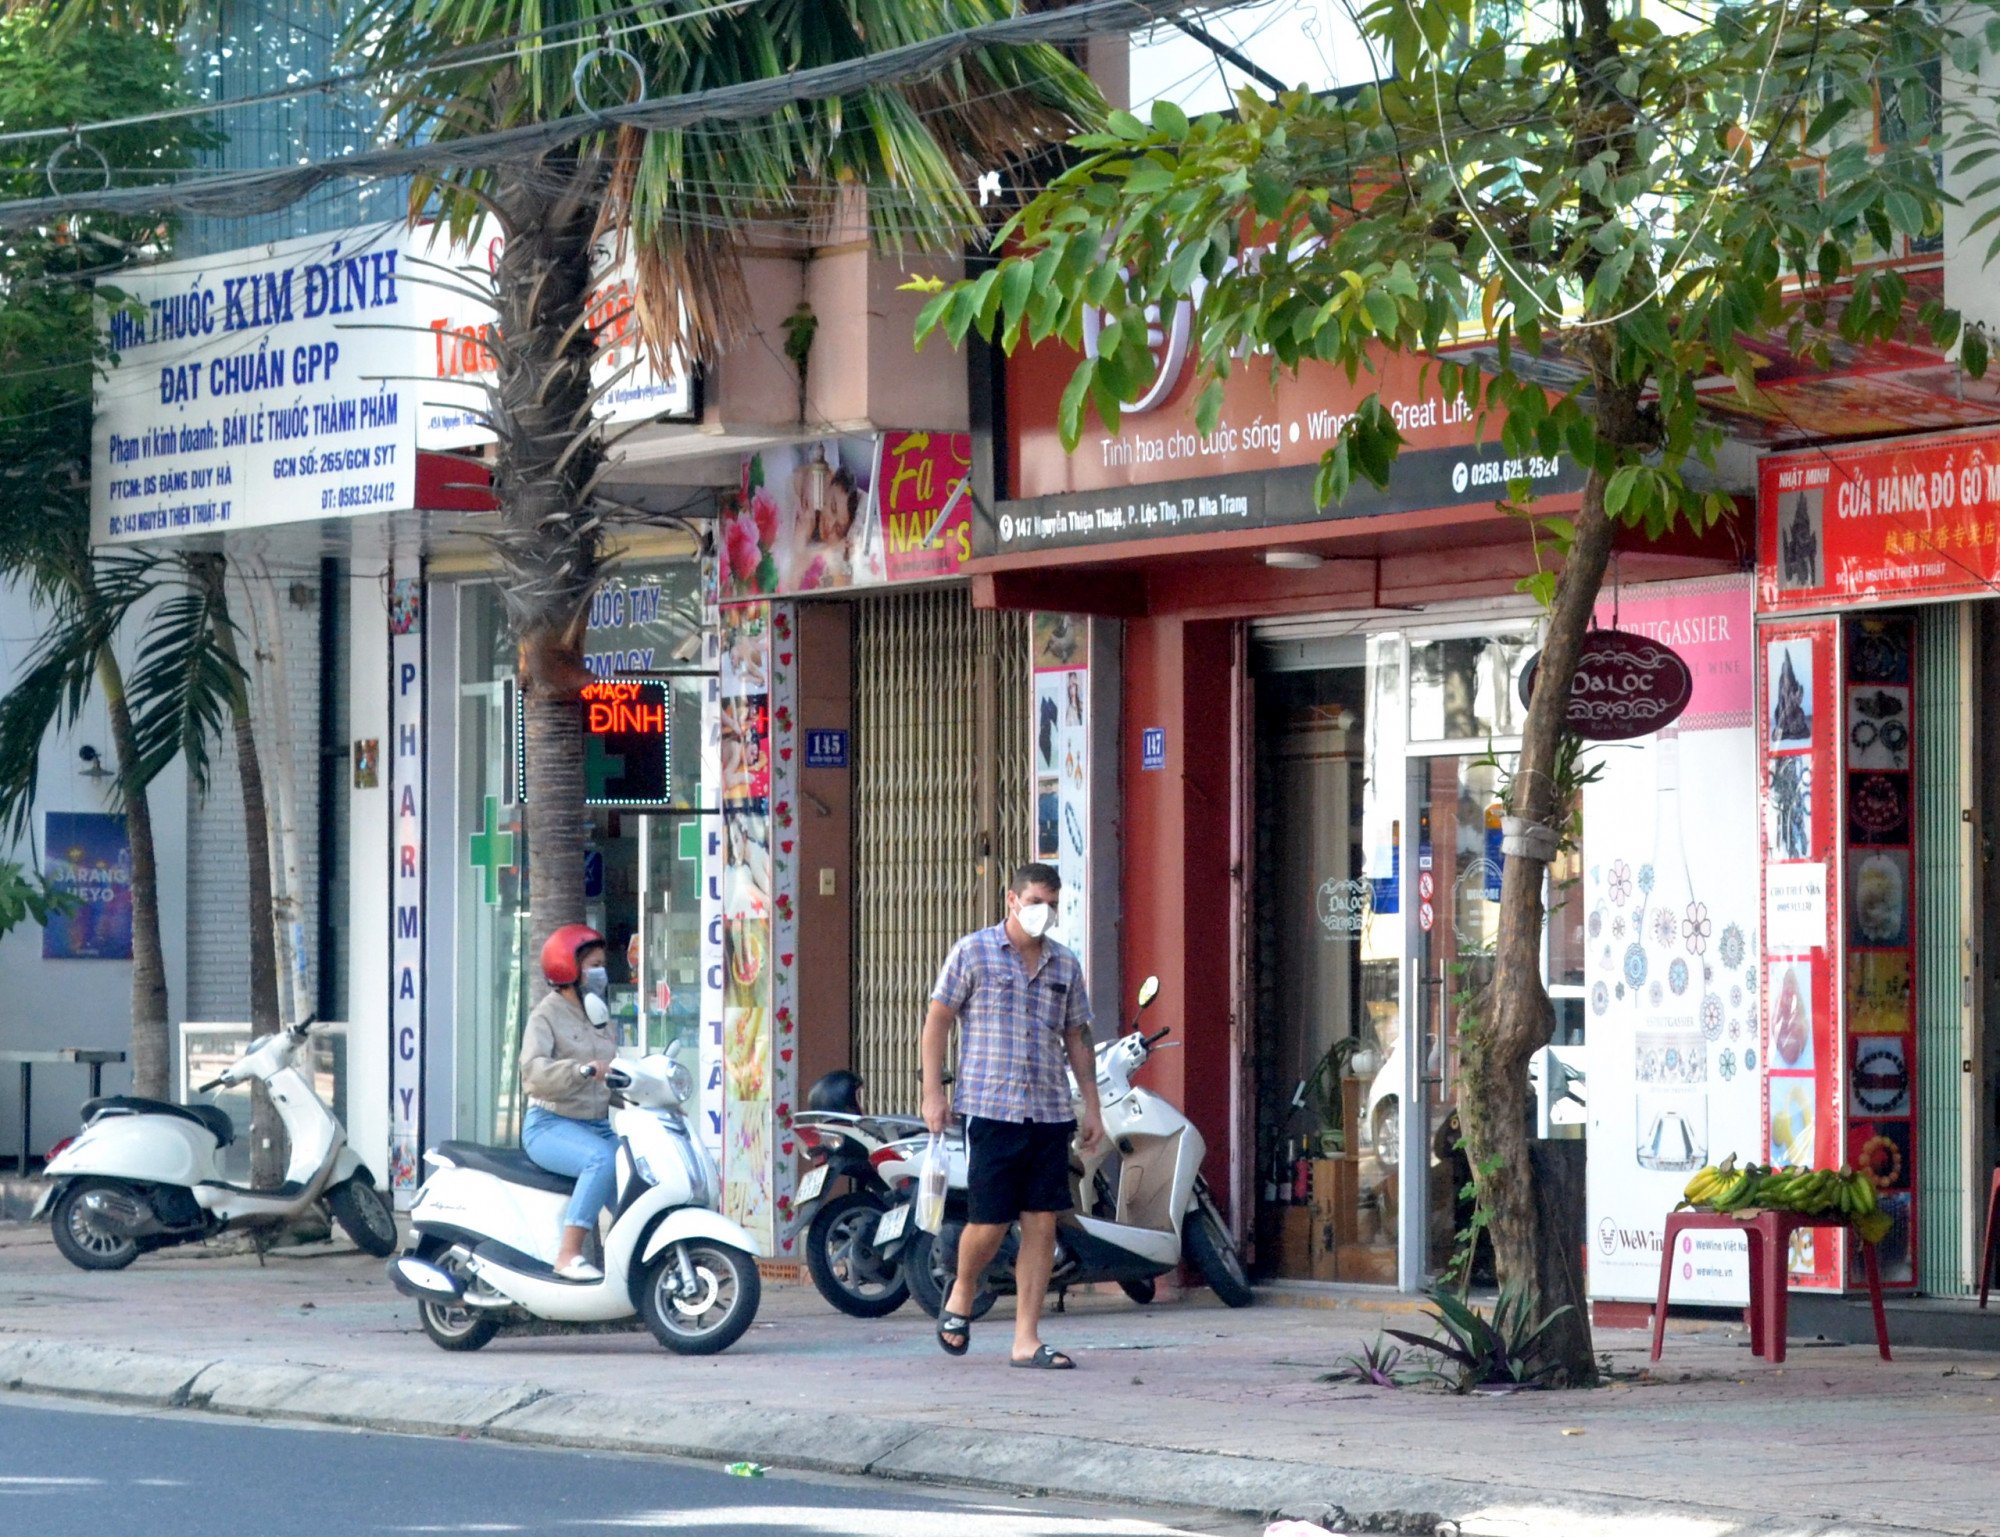 Nếu trước kia ra ngõ gặp khách Tây thì nay hiếm hoi lắm mới có người nước ngoài xuất hiện trên đường phố ở khu phố Tây. Tuy nhiên, họ là những người đã sống ở Nha Trang trước đợt dịch kéo dài